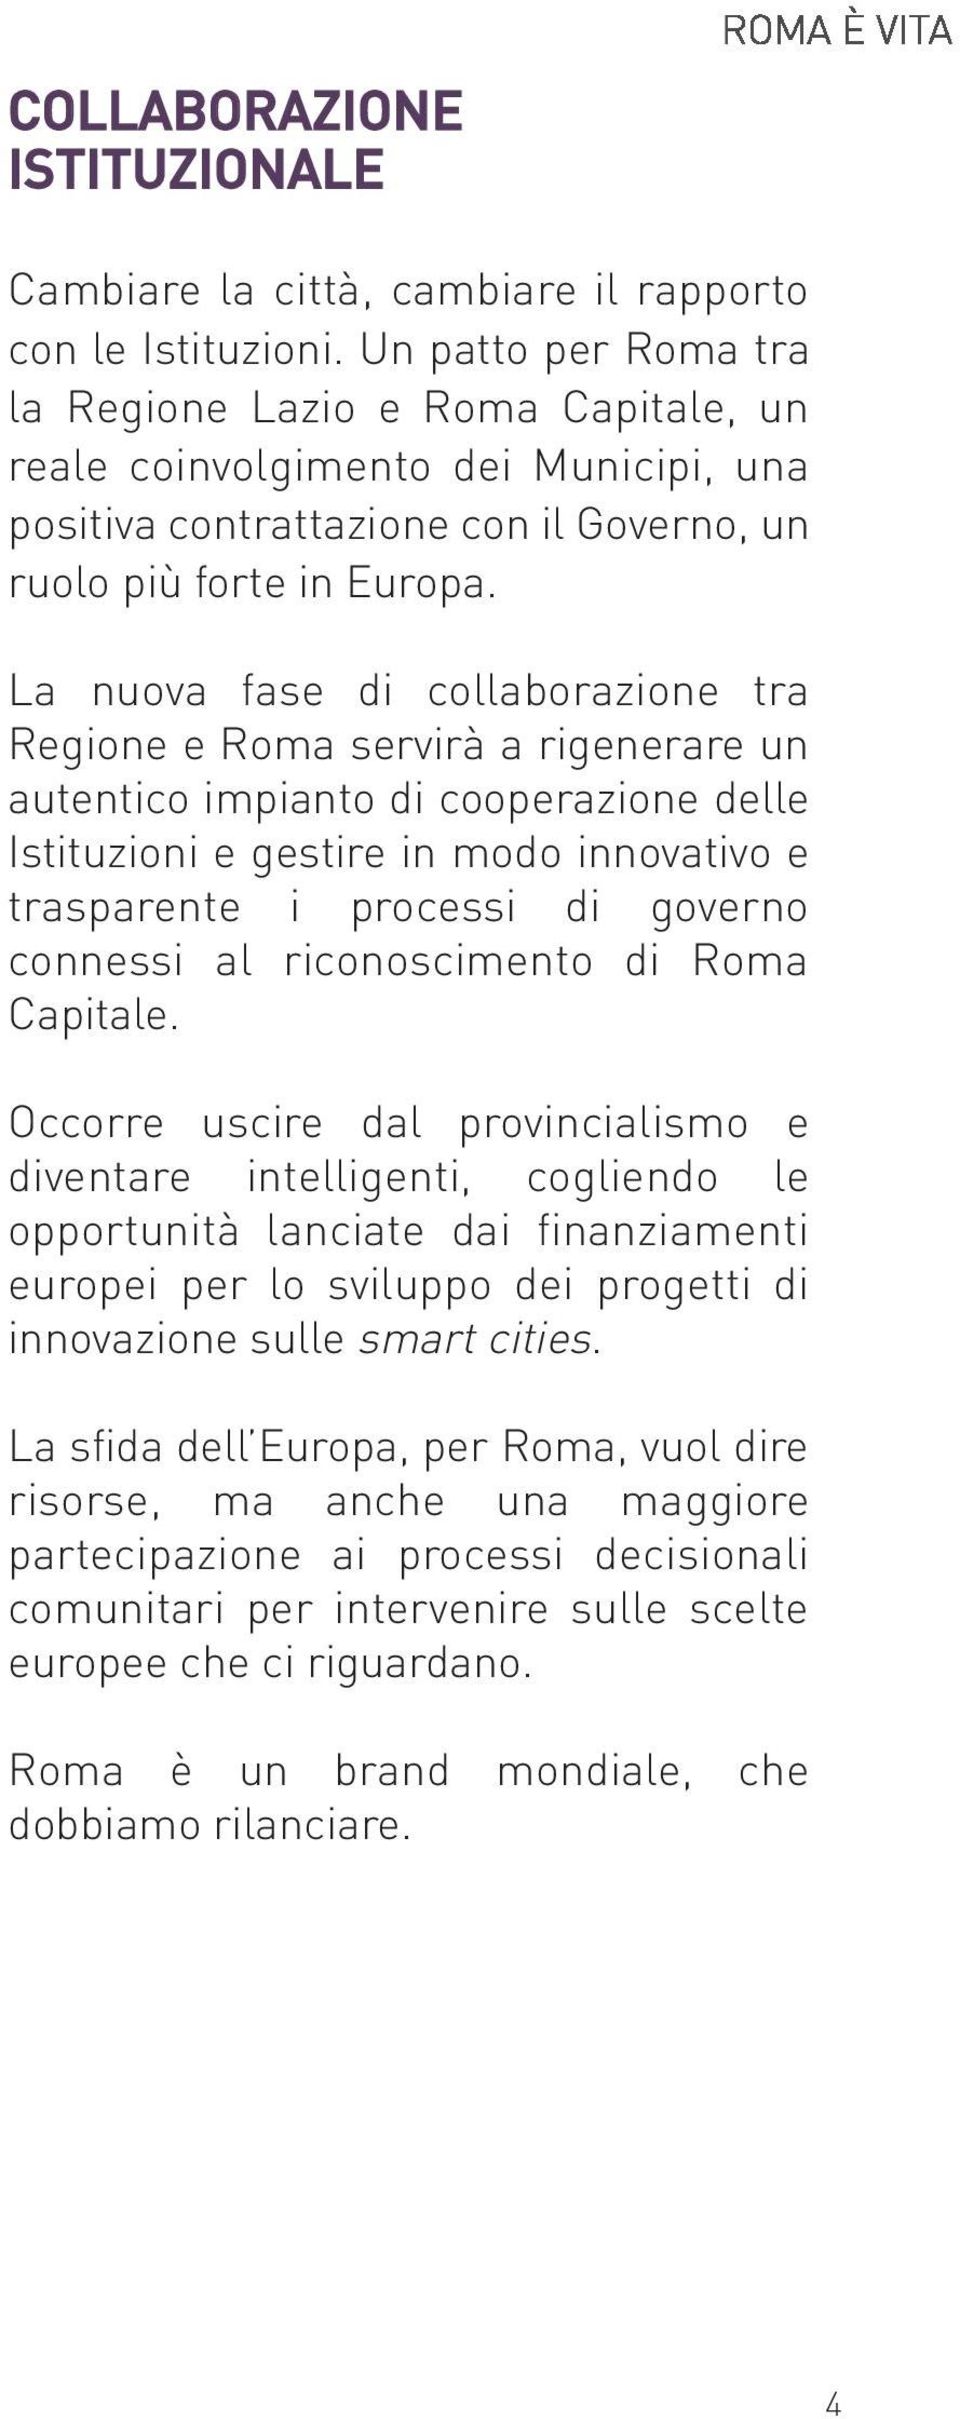 La nuova fase di collaborazione tra Regione e Roma servirà a rigenerare un autentico impianto di cooperazione delle Istituzioni e gestire in modo innovativo e trasparente i processi di governo